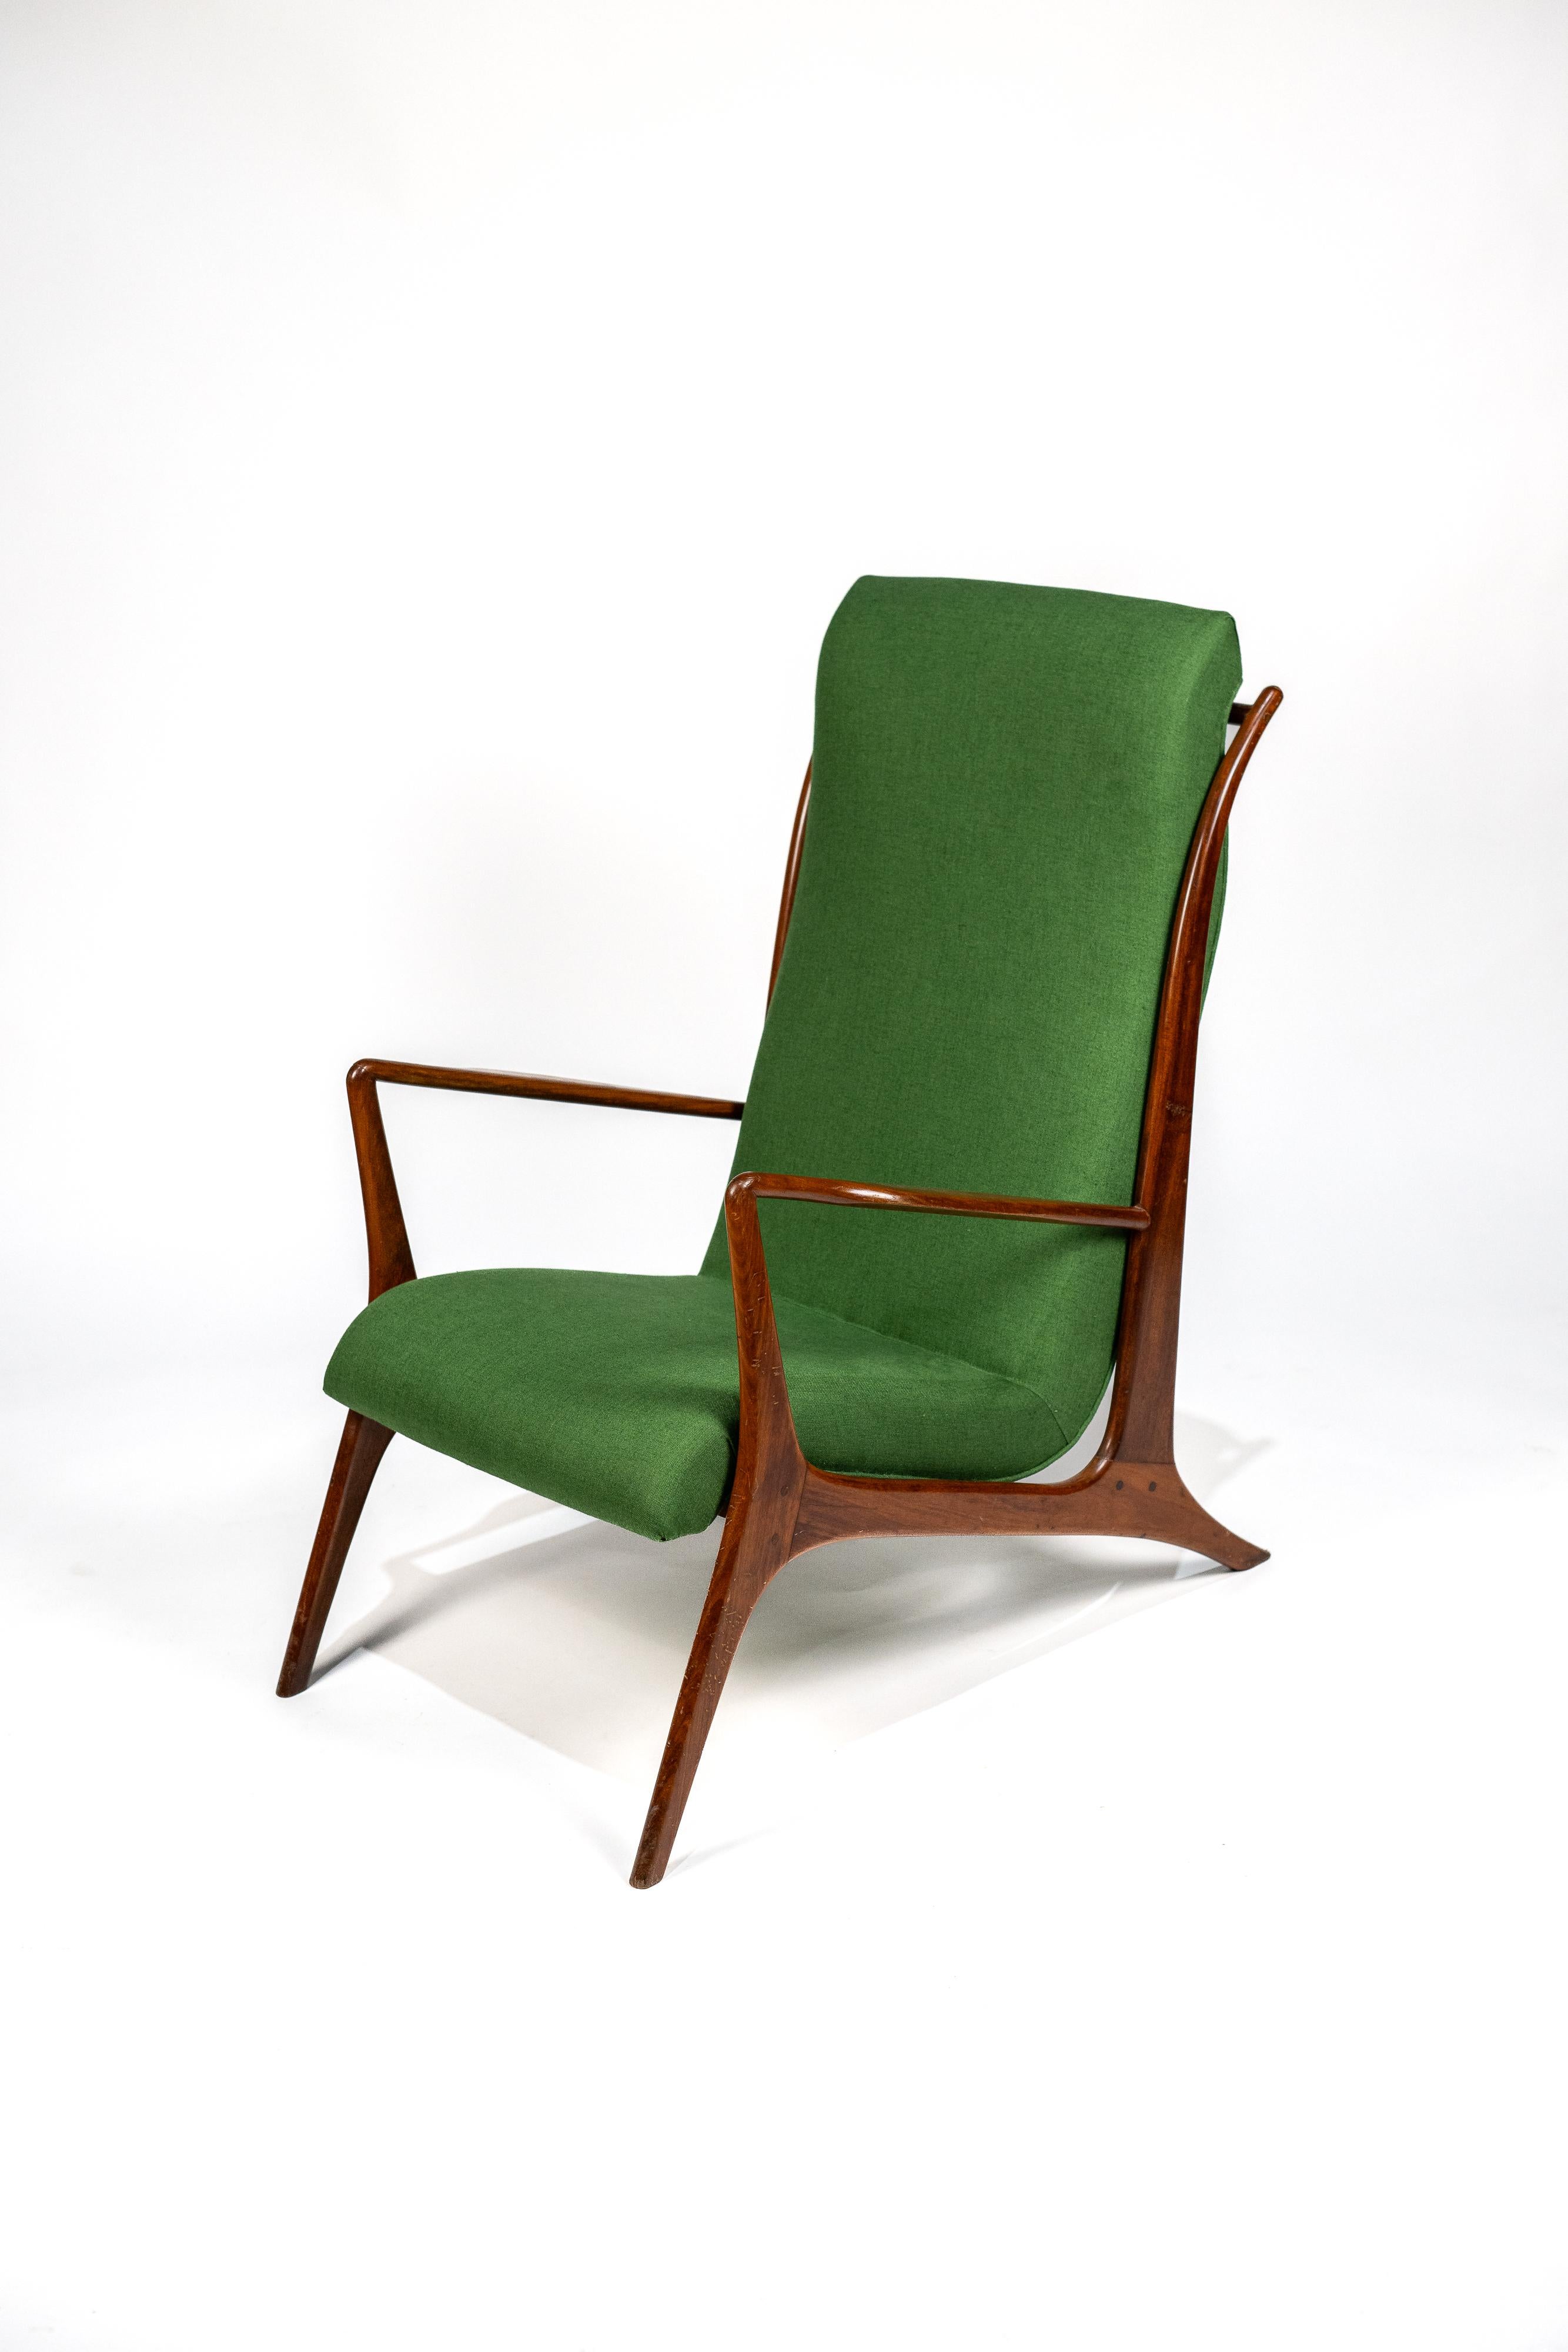 Ce fauteuil de John Graz, datant des années 1960. La pièce se caractérise par un dossier haut légèrement incliné, offrant un confort optimal. Sa structure profilée en caviuna, un bois exotique, confère à l'ensemble une élégance